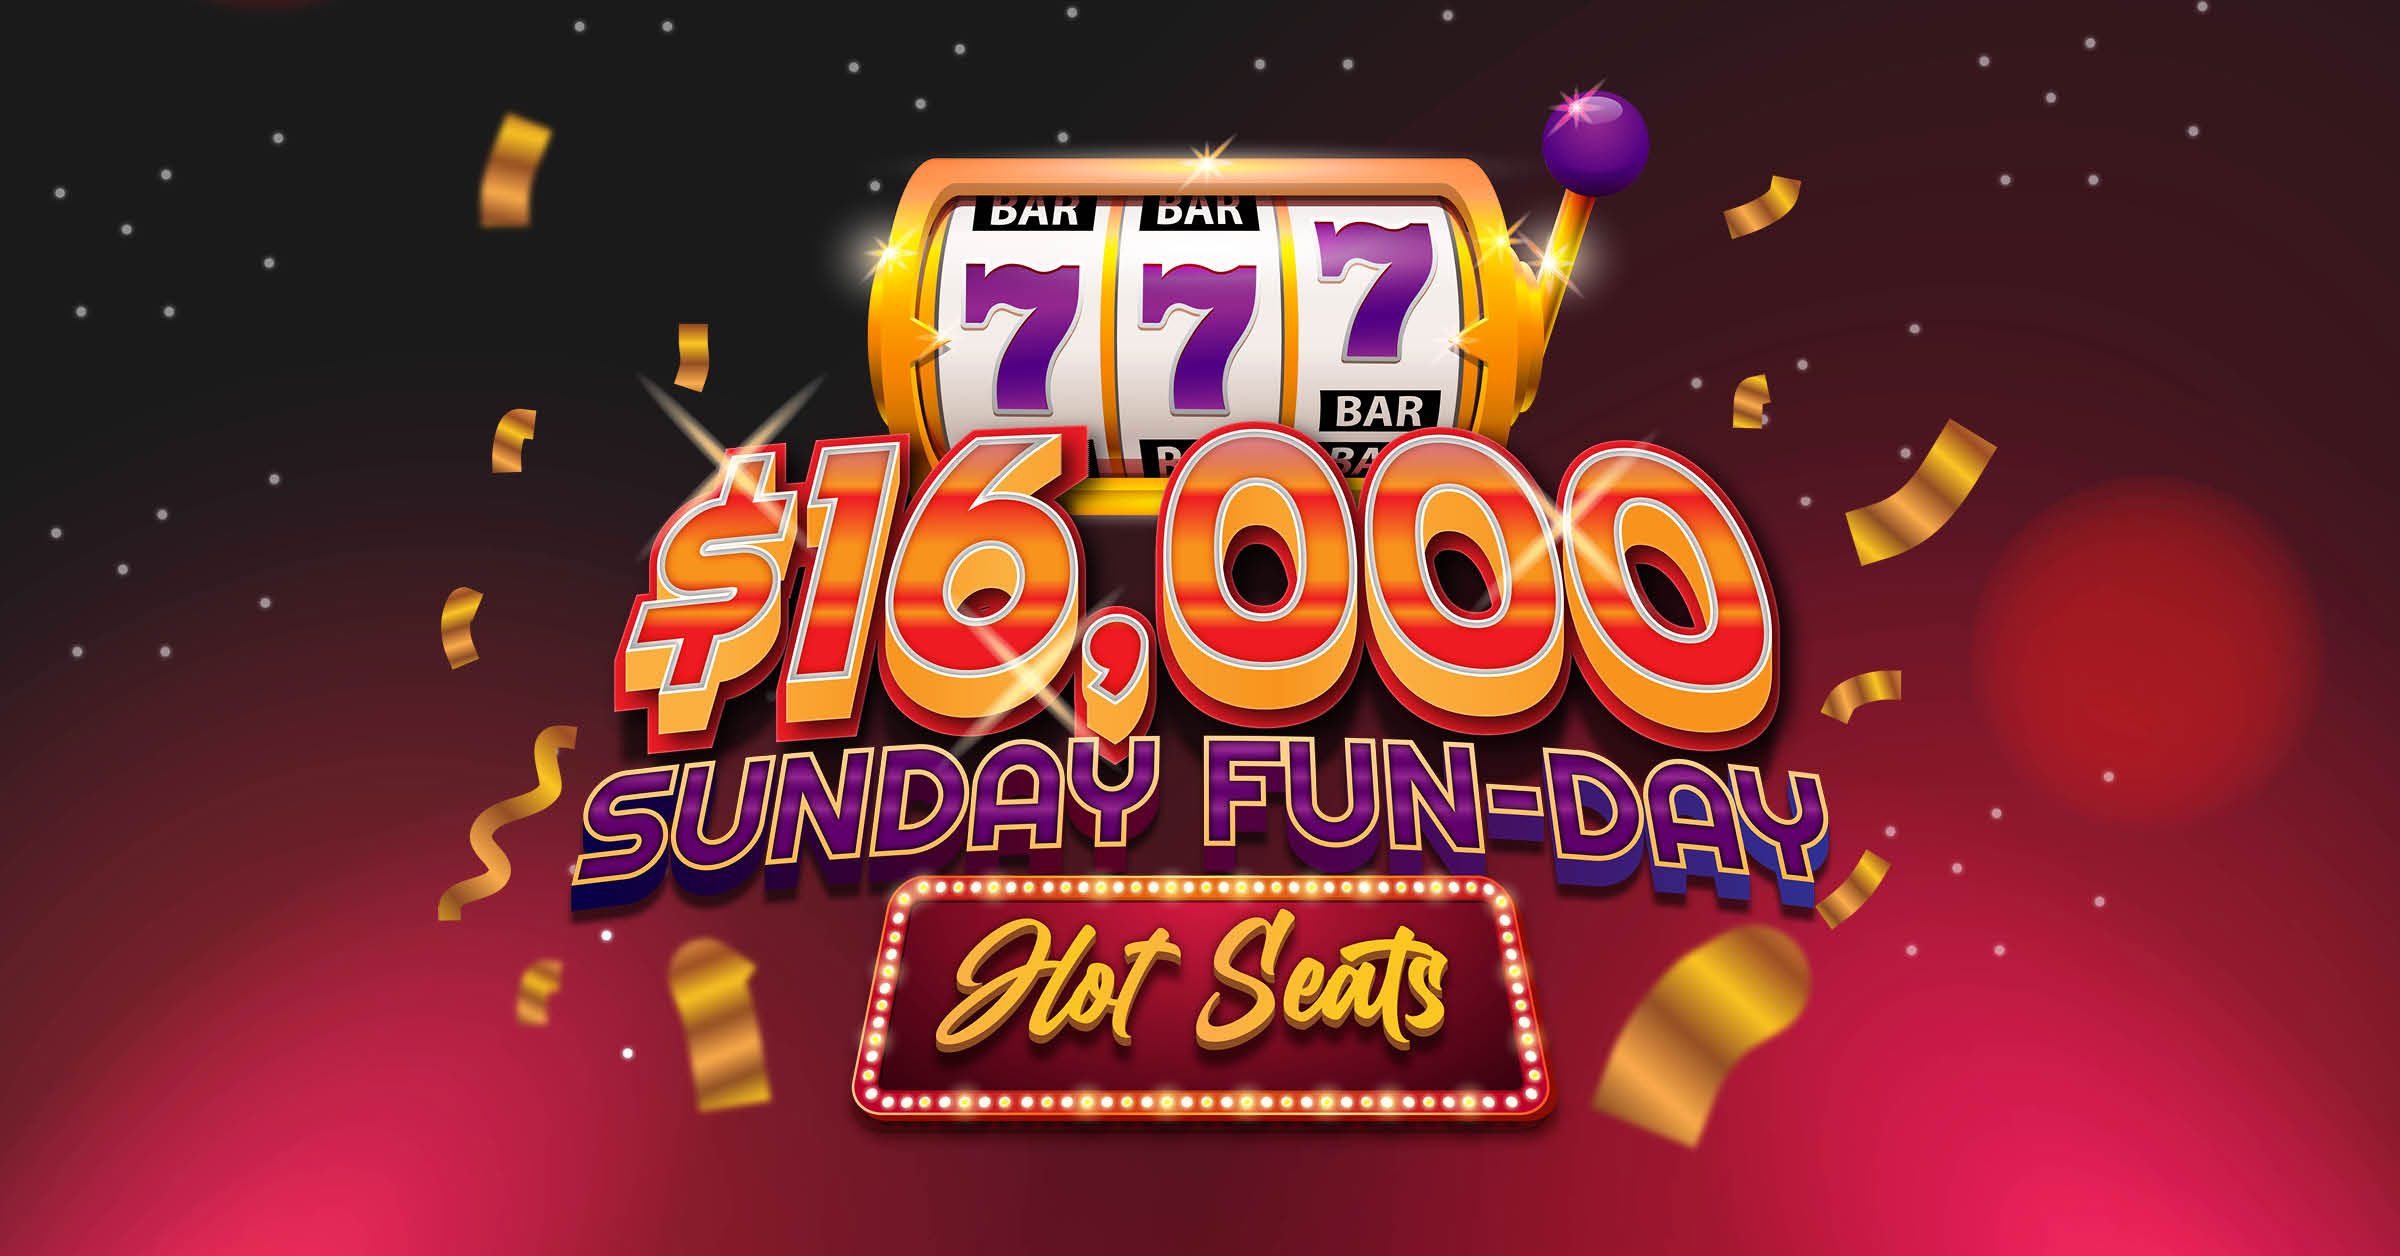 $16,000 Sunday Fun-Day Hot Seats